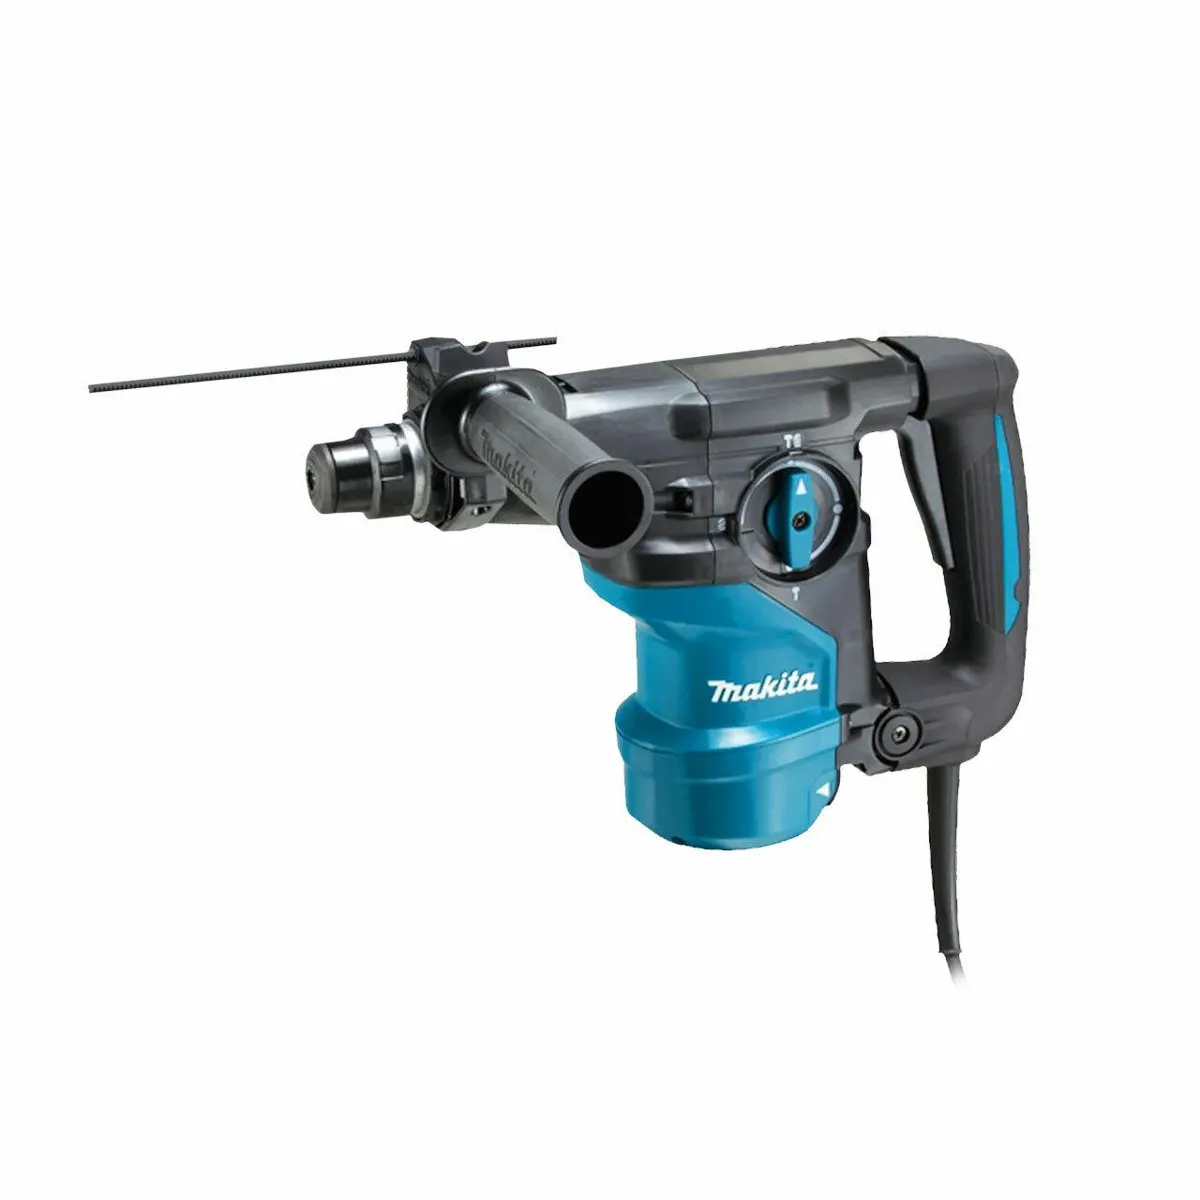 Makita HR3001CJ/1 SDS+ Rotary Hammer Drill 110V